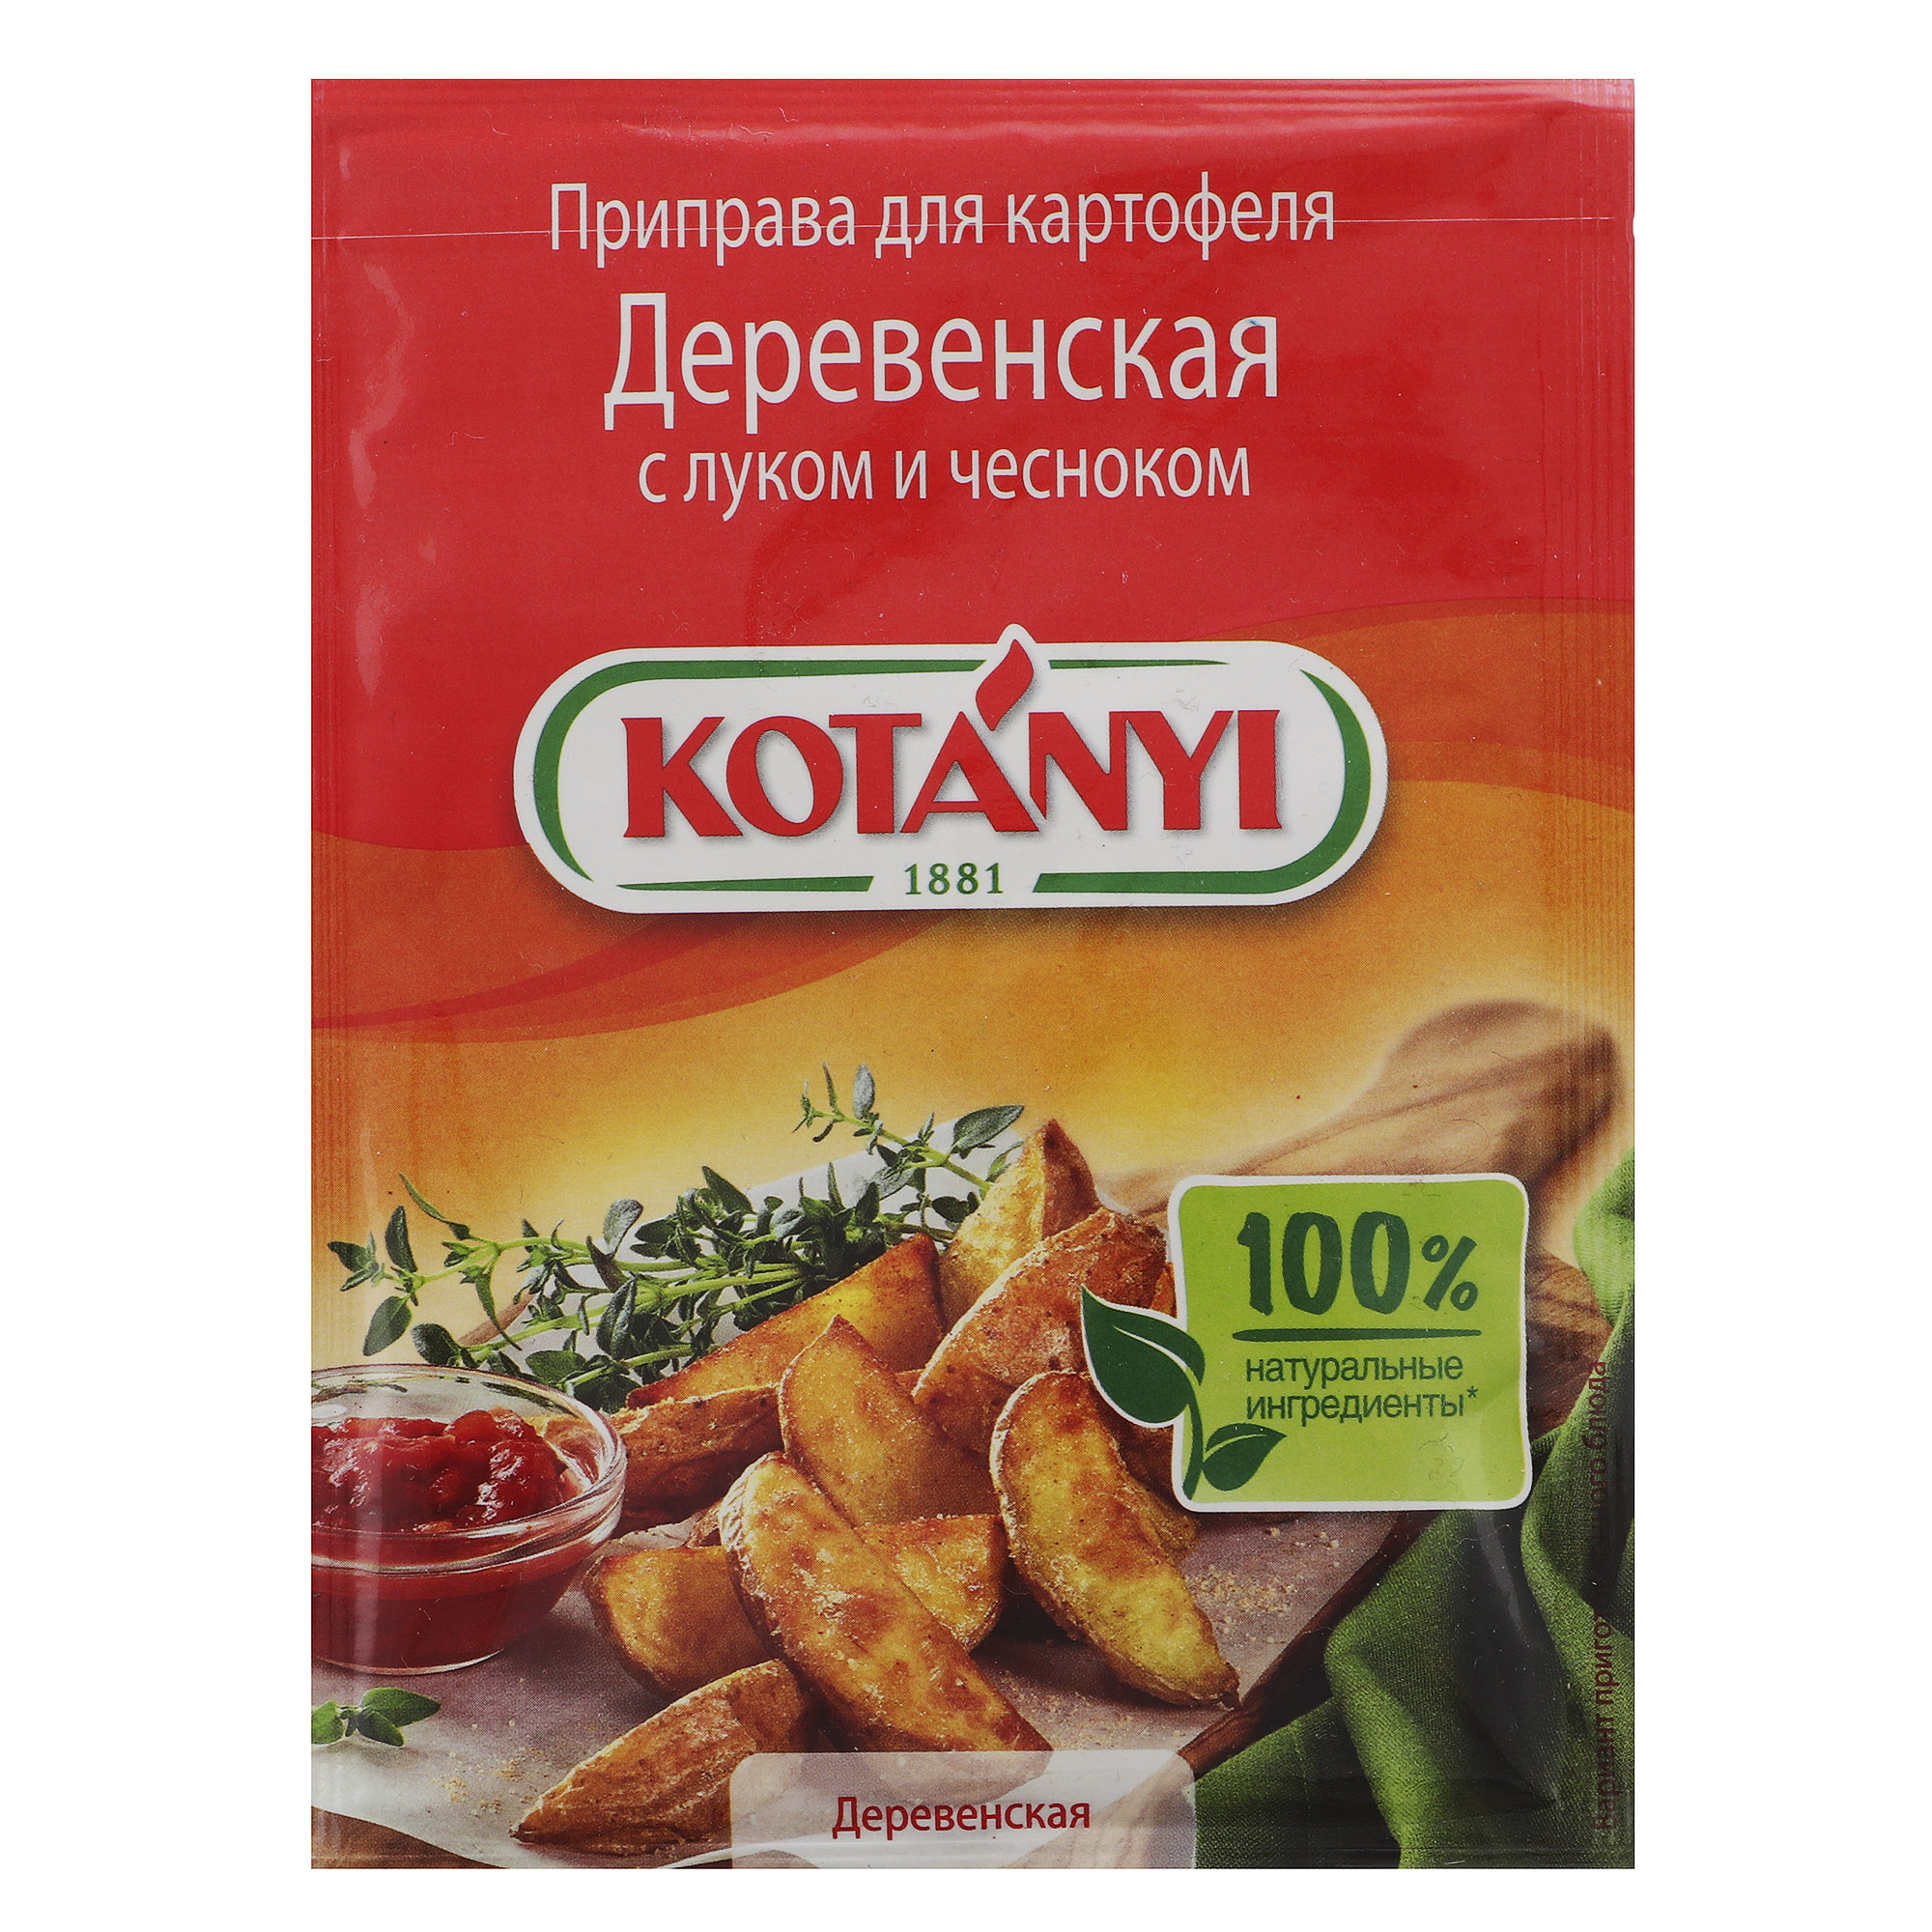 Приправа Kotanyi Деревенская для картофеля с луком и чесноком 20 г приправа kotanyi для свинины 30 г